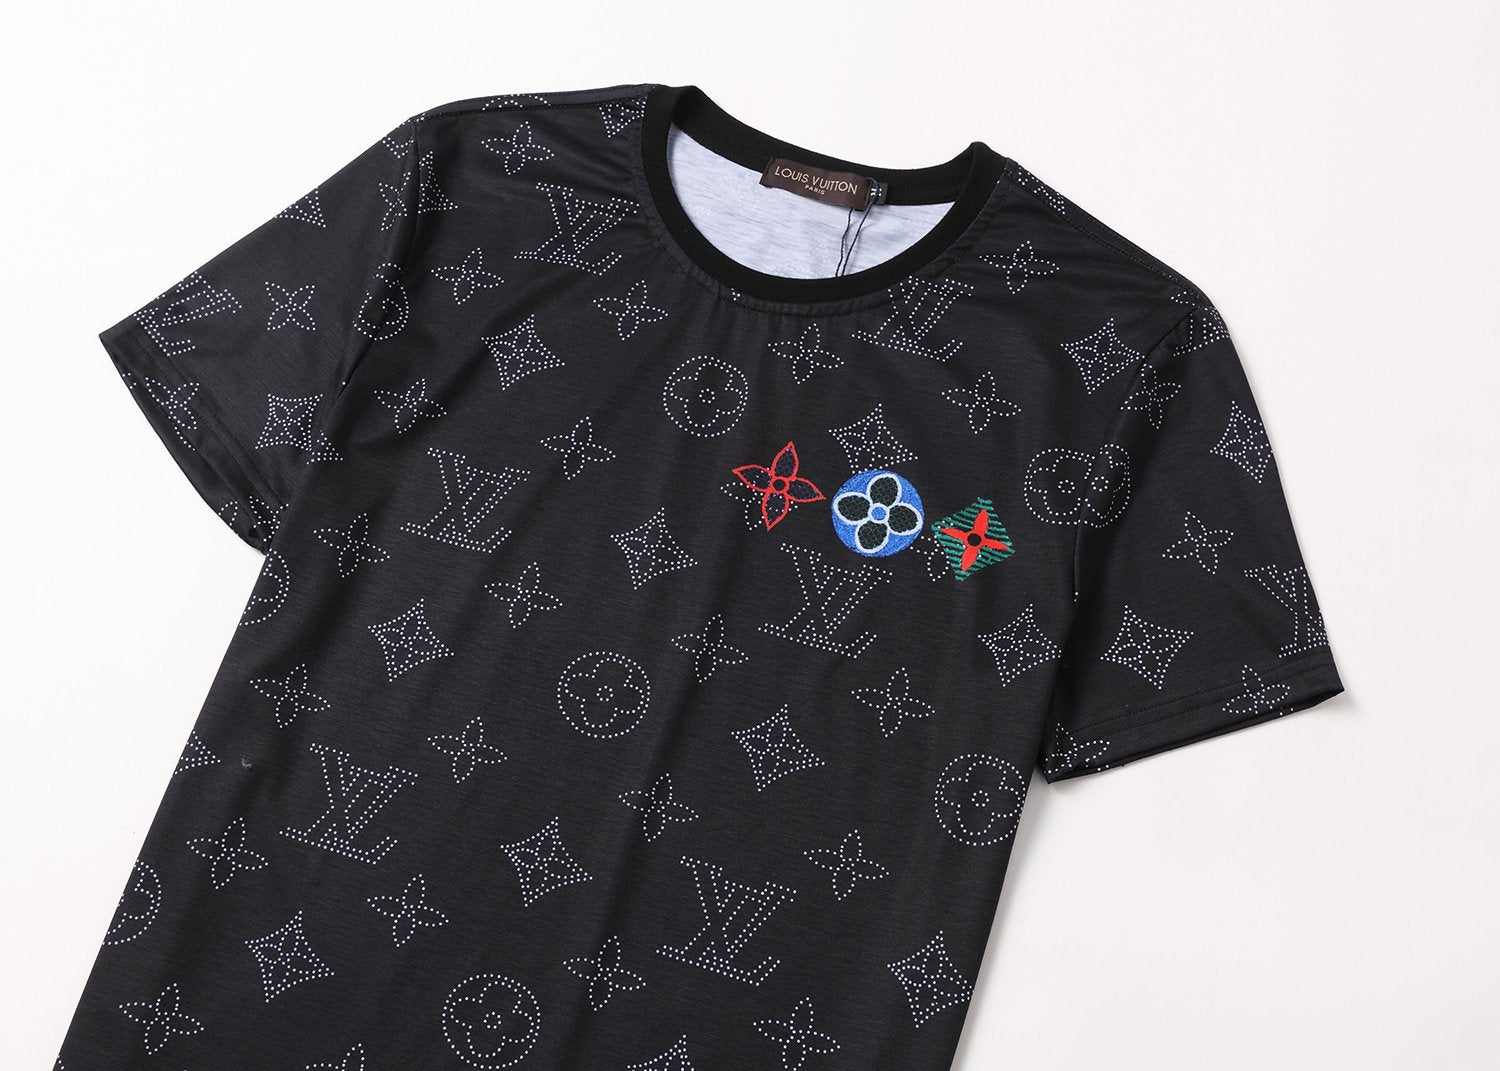 LV Louis Vuitton Casual Fashion Print T-Shirt